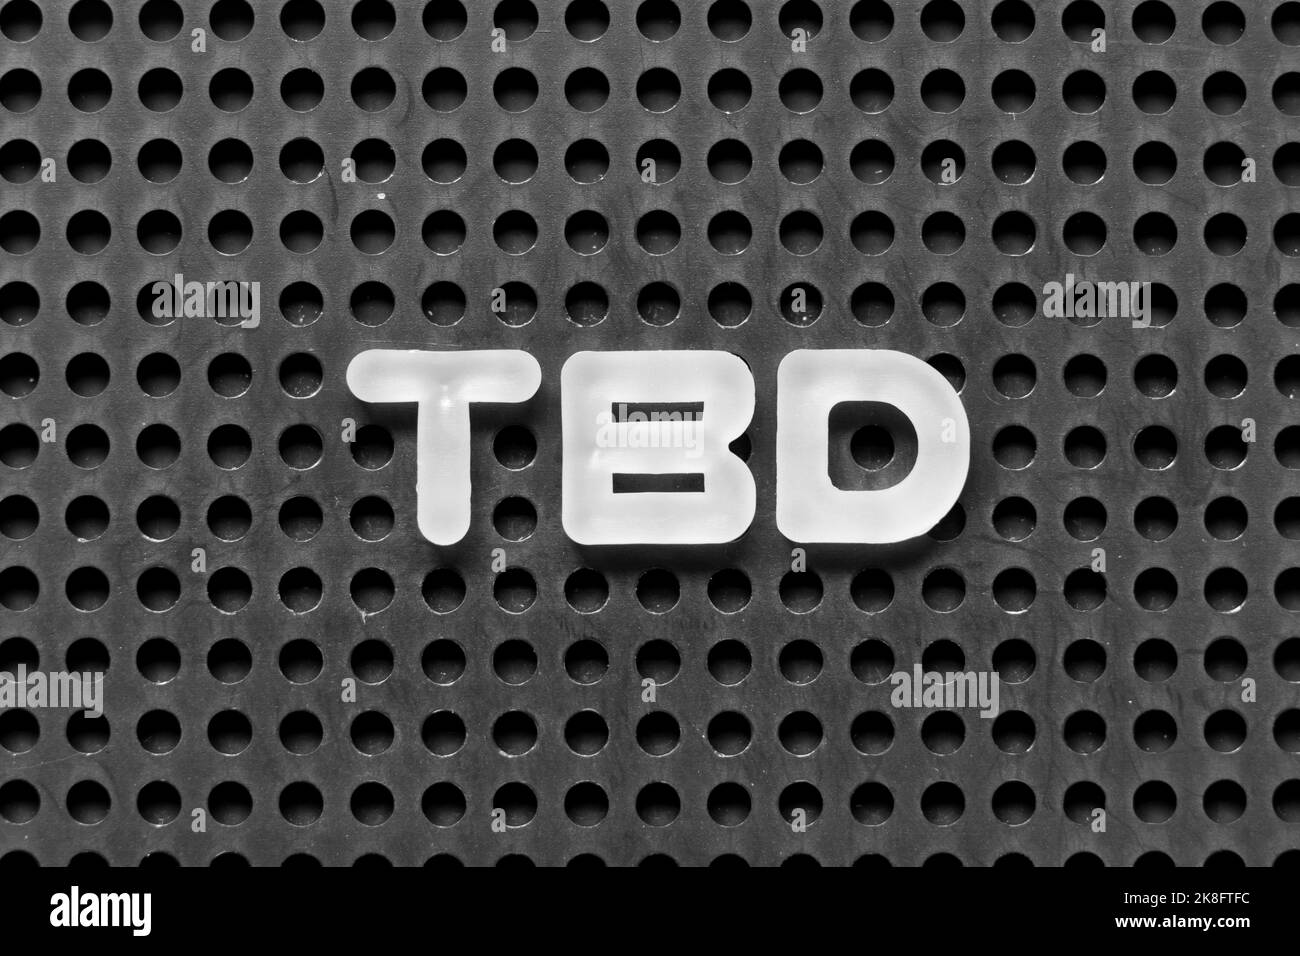 Lettera dell'alfabeto bianco in parola TBD (abbreviazione di da definire, discutere, determinare, decidere, cancellare o dichiarare) su sfondo nero di pegboard Foto Stock